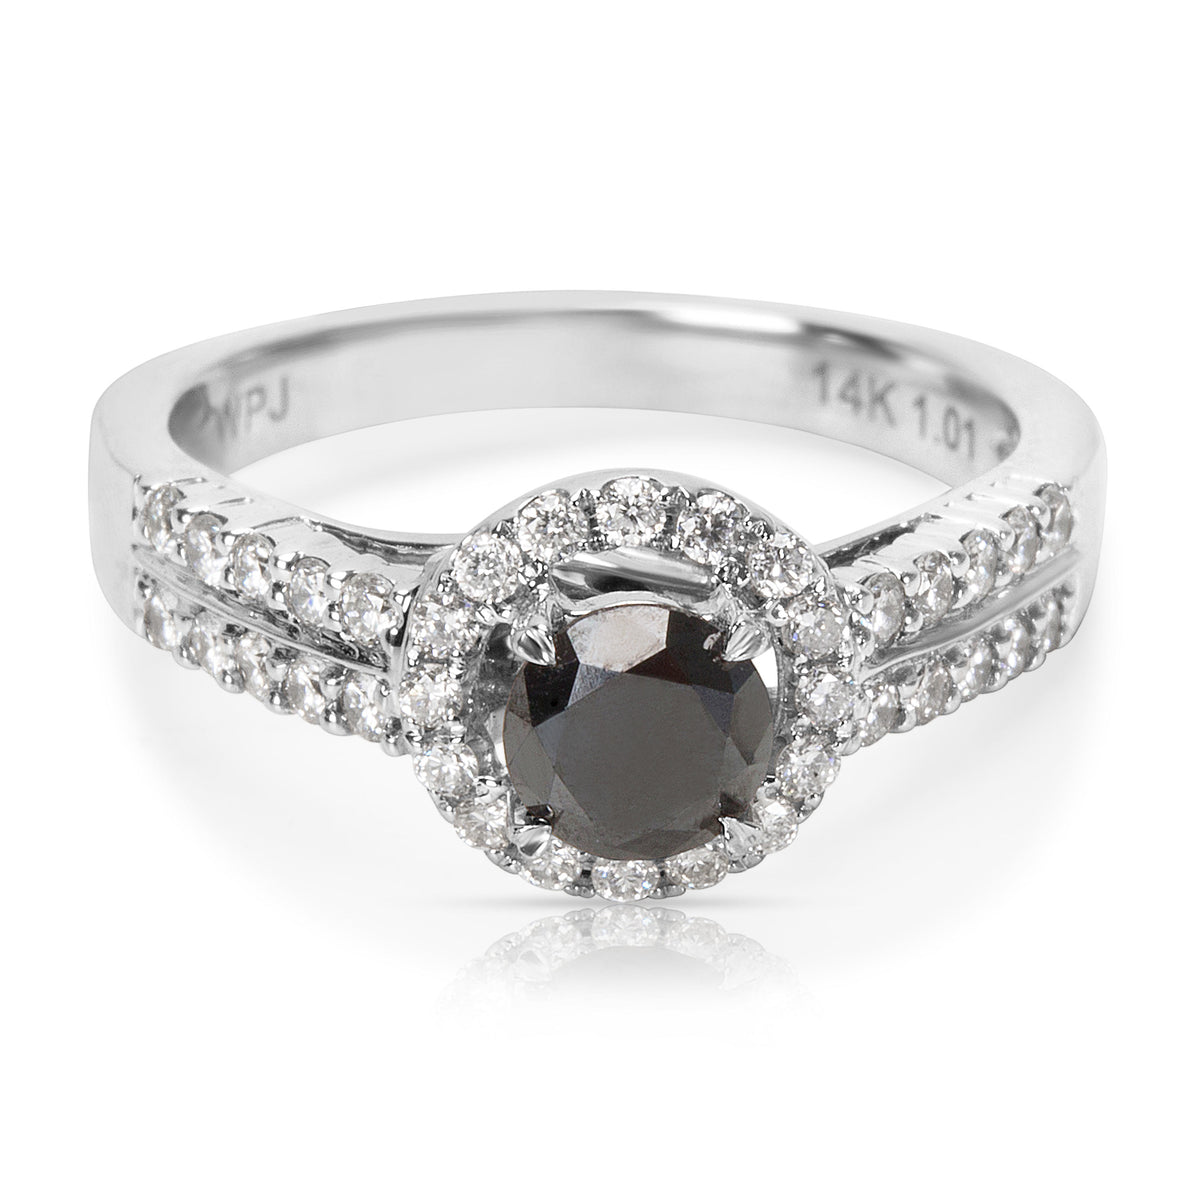 BRAND NEW Black Diamond Engagement Ring in 14k White Gold (1.02 CTW)